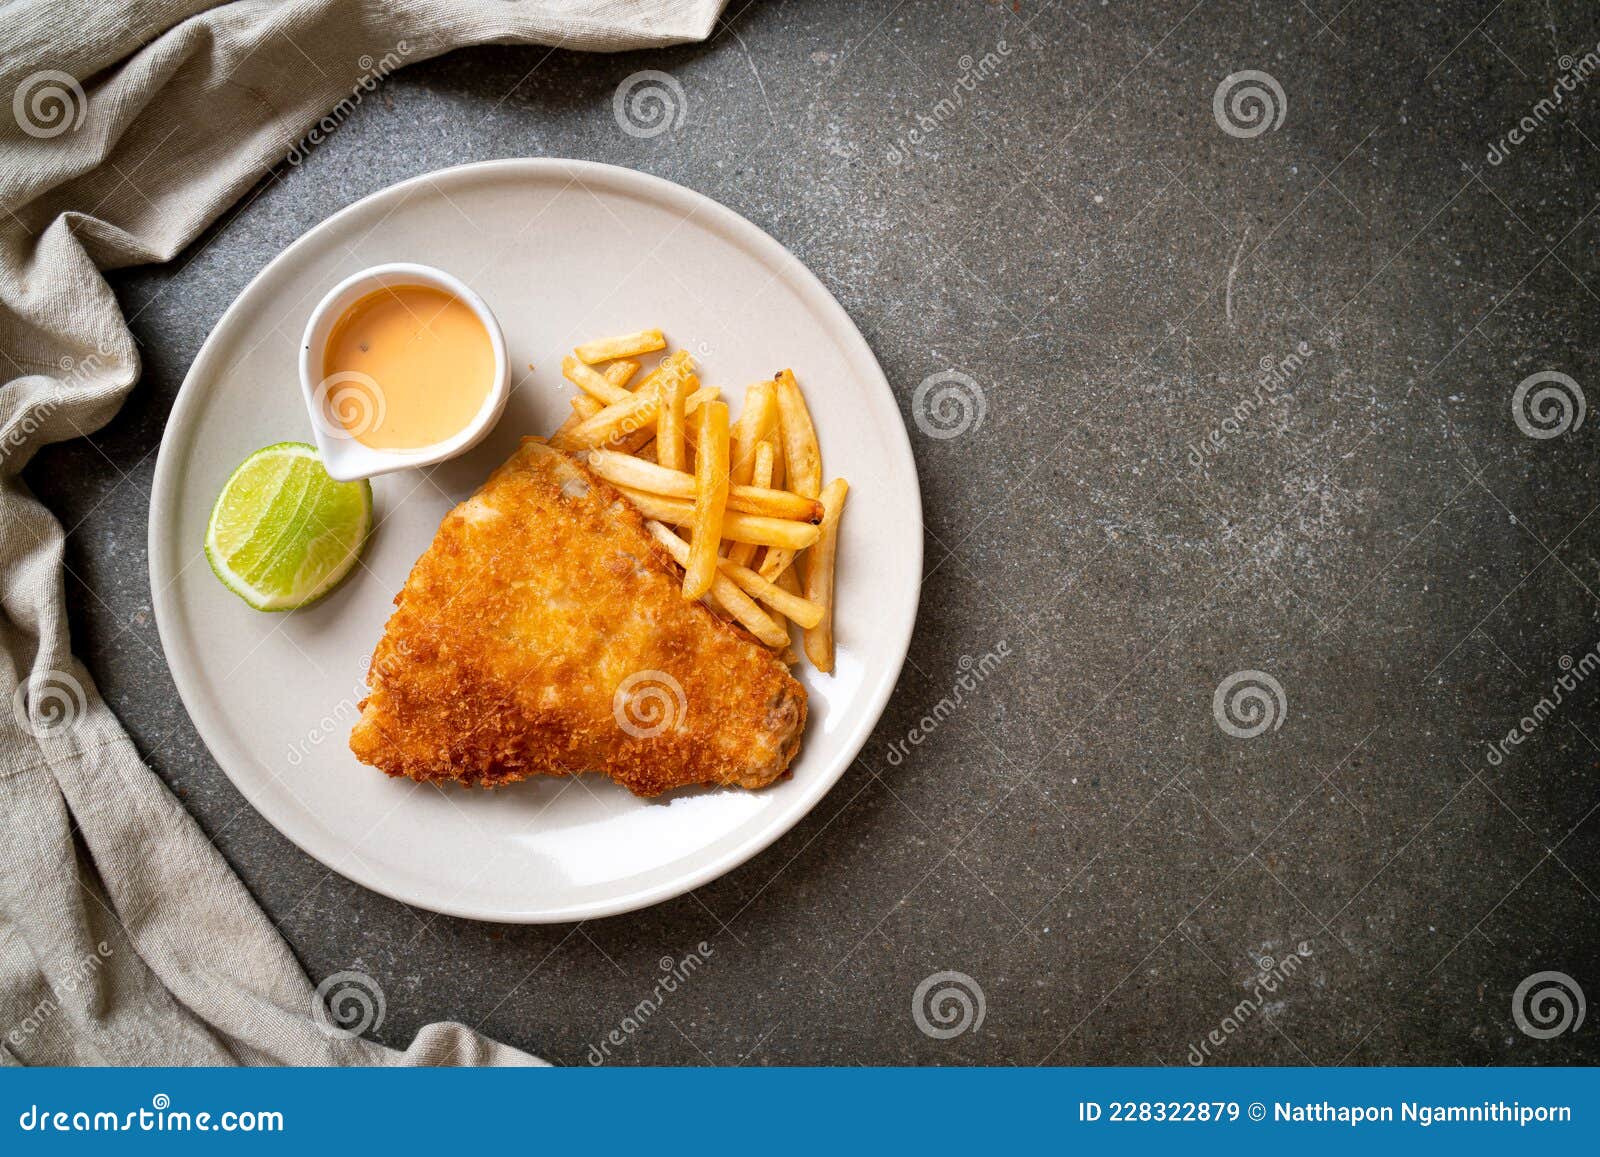 炸鱼和薯条/薯条放在盘子里照片摄影图片_ID:145292200-Veer图库